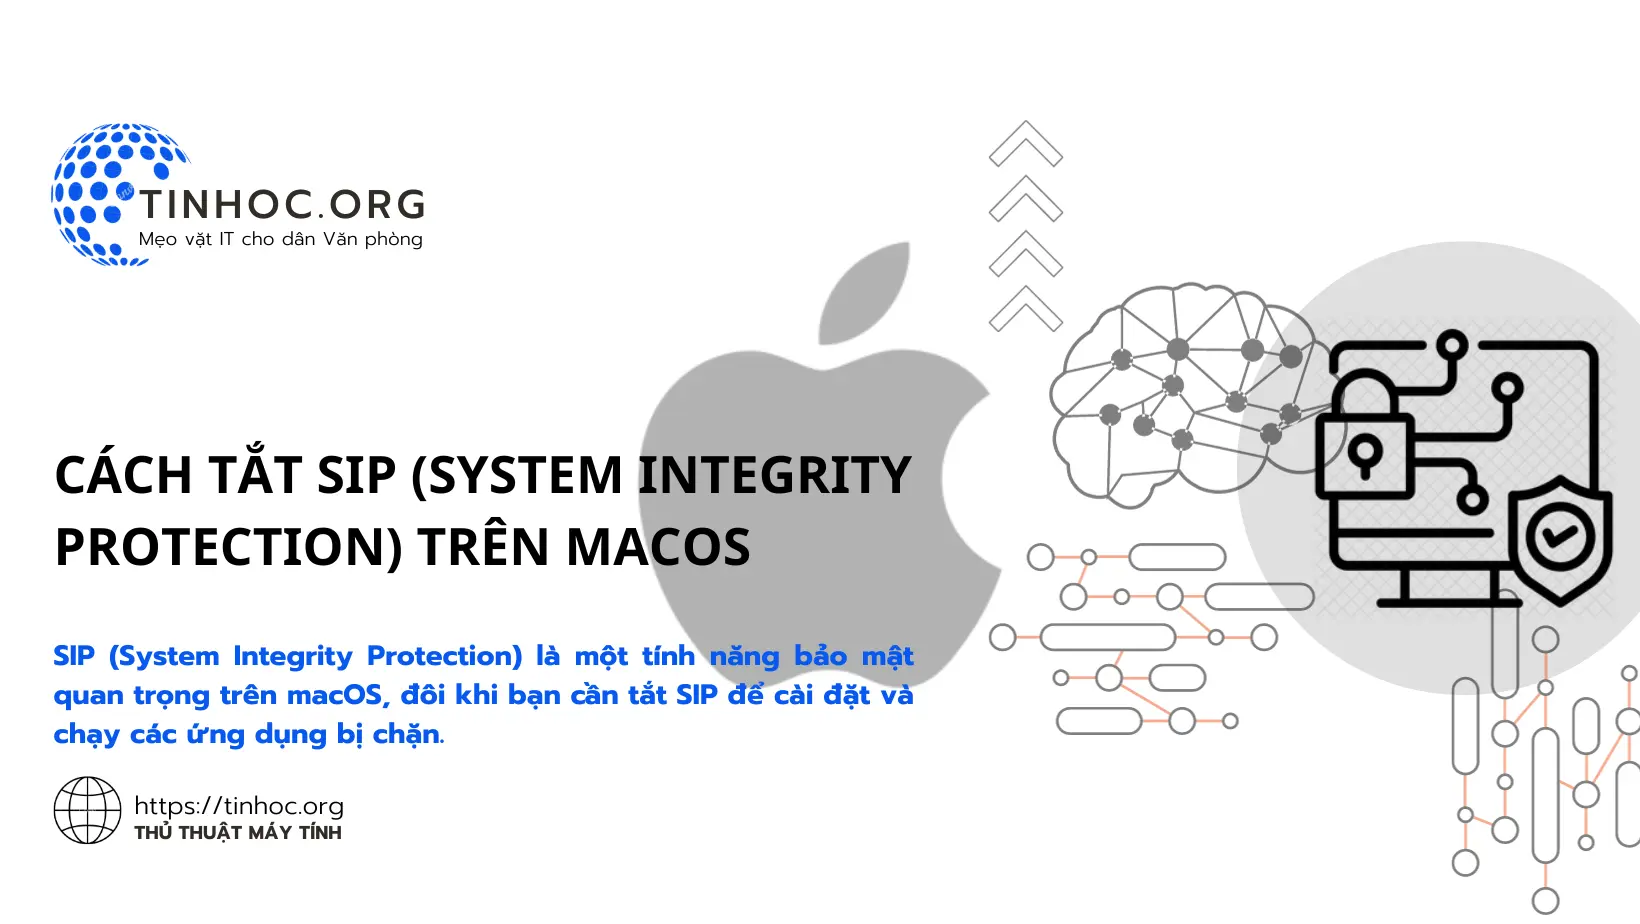 SIP (System Integrity Protection) là một tính năng bảo mật quan trọng trên macOS, đôi khi bạn cần tắt SIP để cài đặt và chạy các ứng dụng bị chặn.